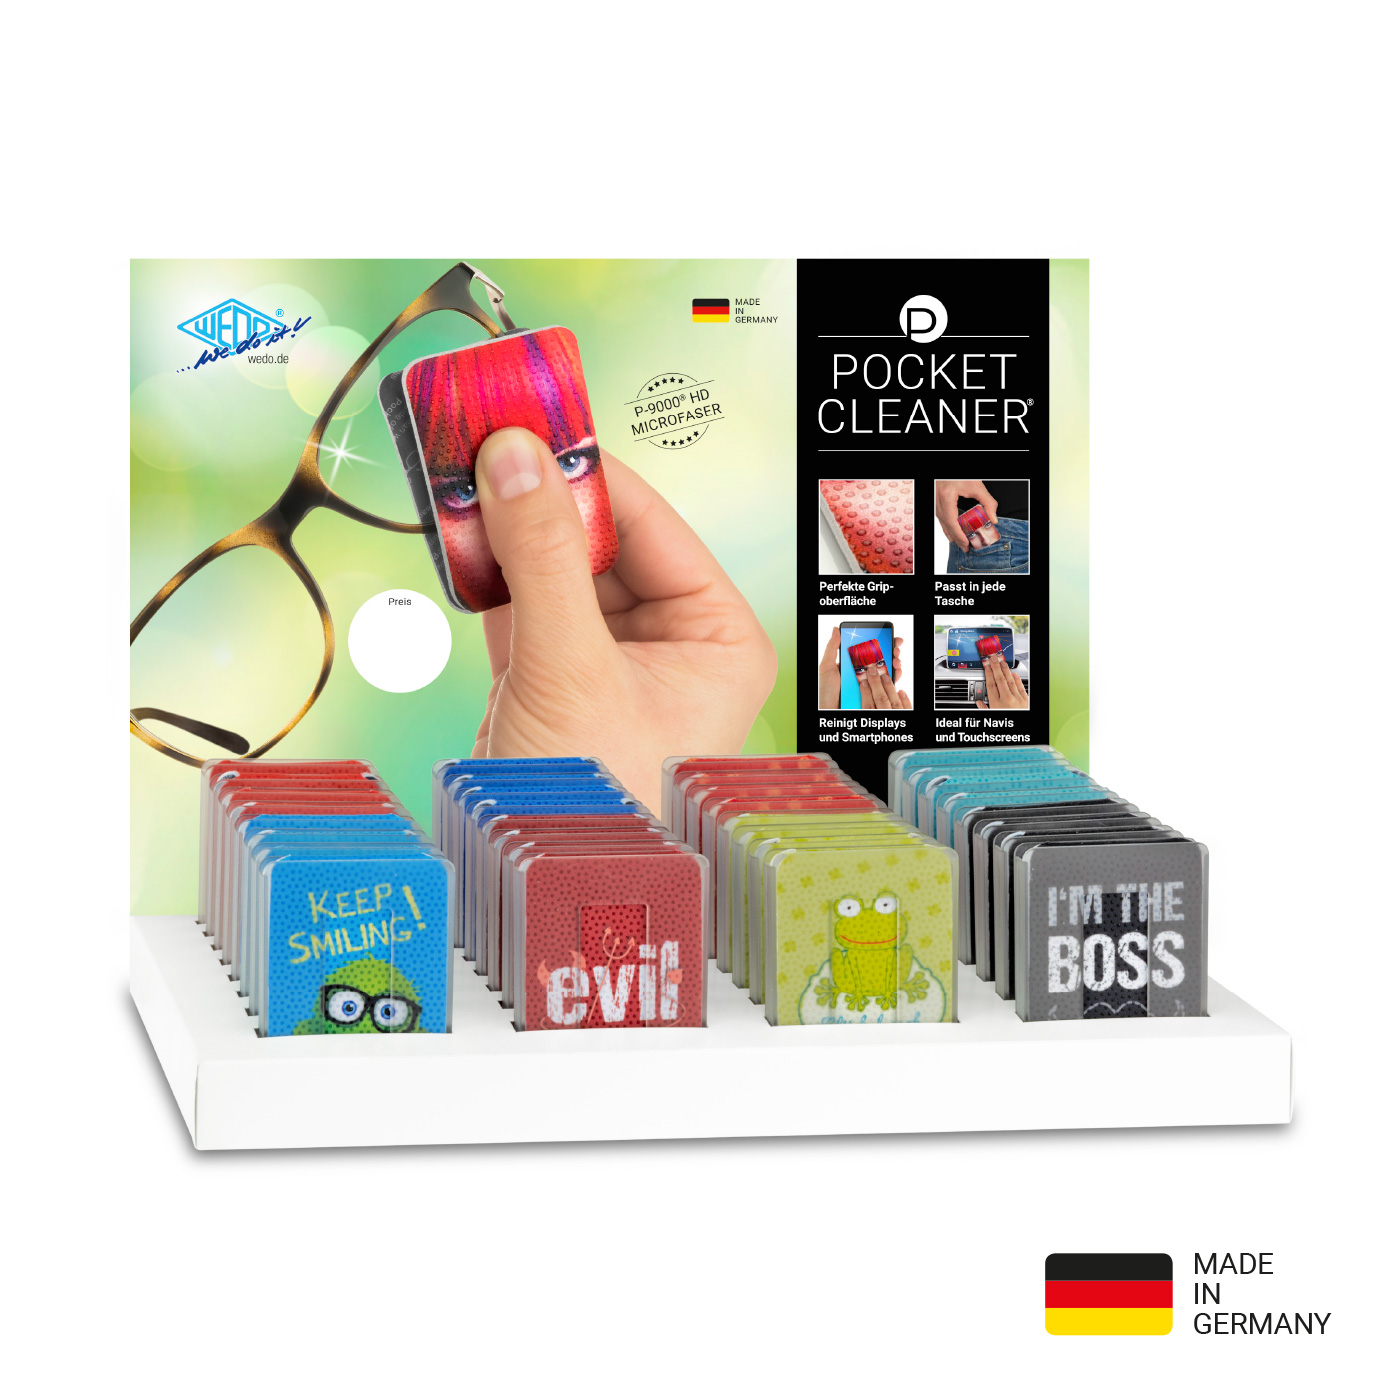 PocketCleaner Brillen-Putztuch, Smartphone- oder Tabletputztuch im Kunststoff-Etui, Design sortiert